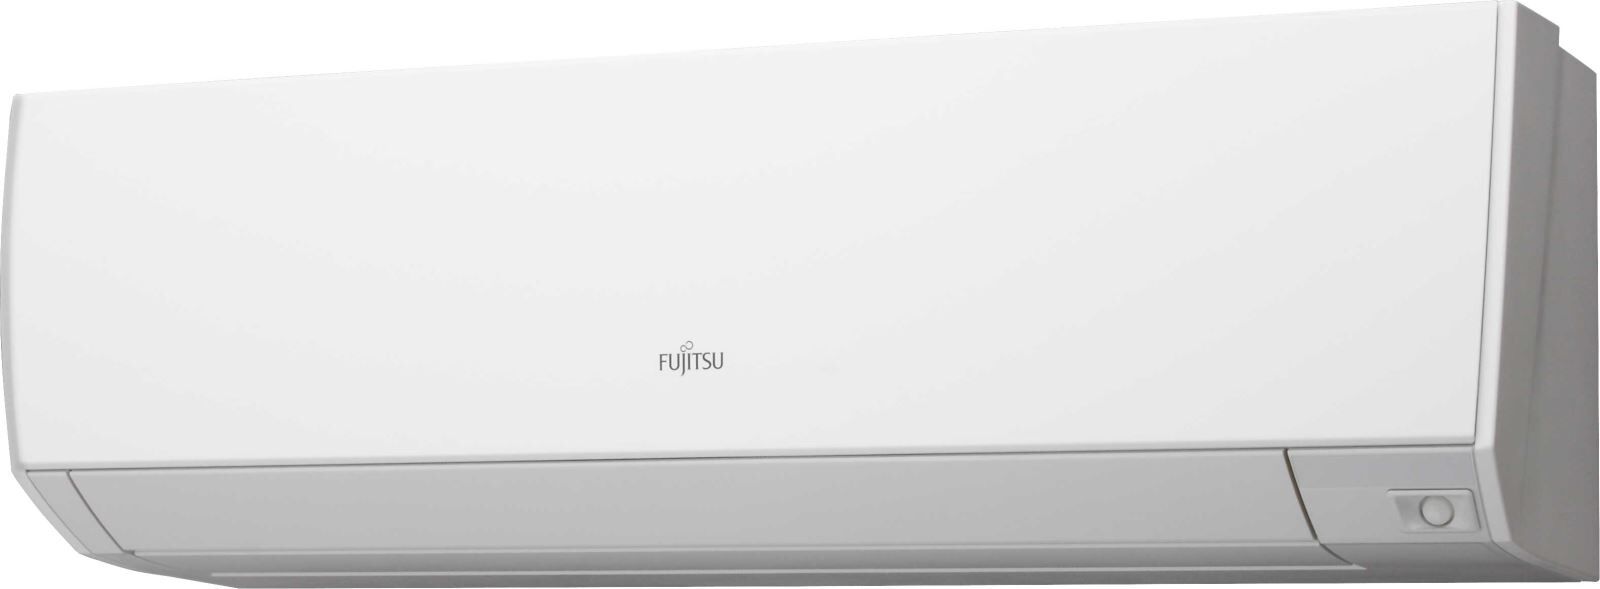 Кондиционер сплит-система Fujitsu ASYG12KHCA/AOYG12KHCAN цена 0.00 грн - фотография 2